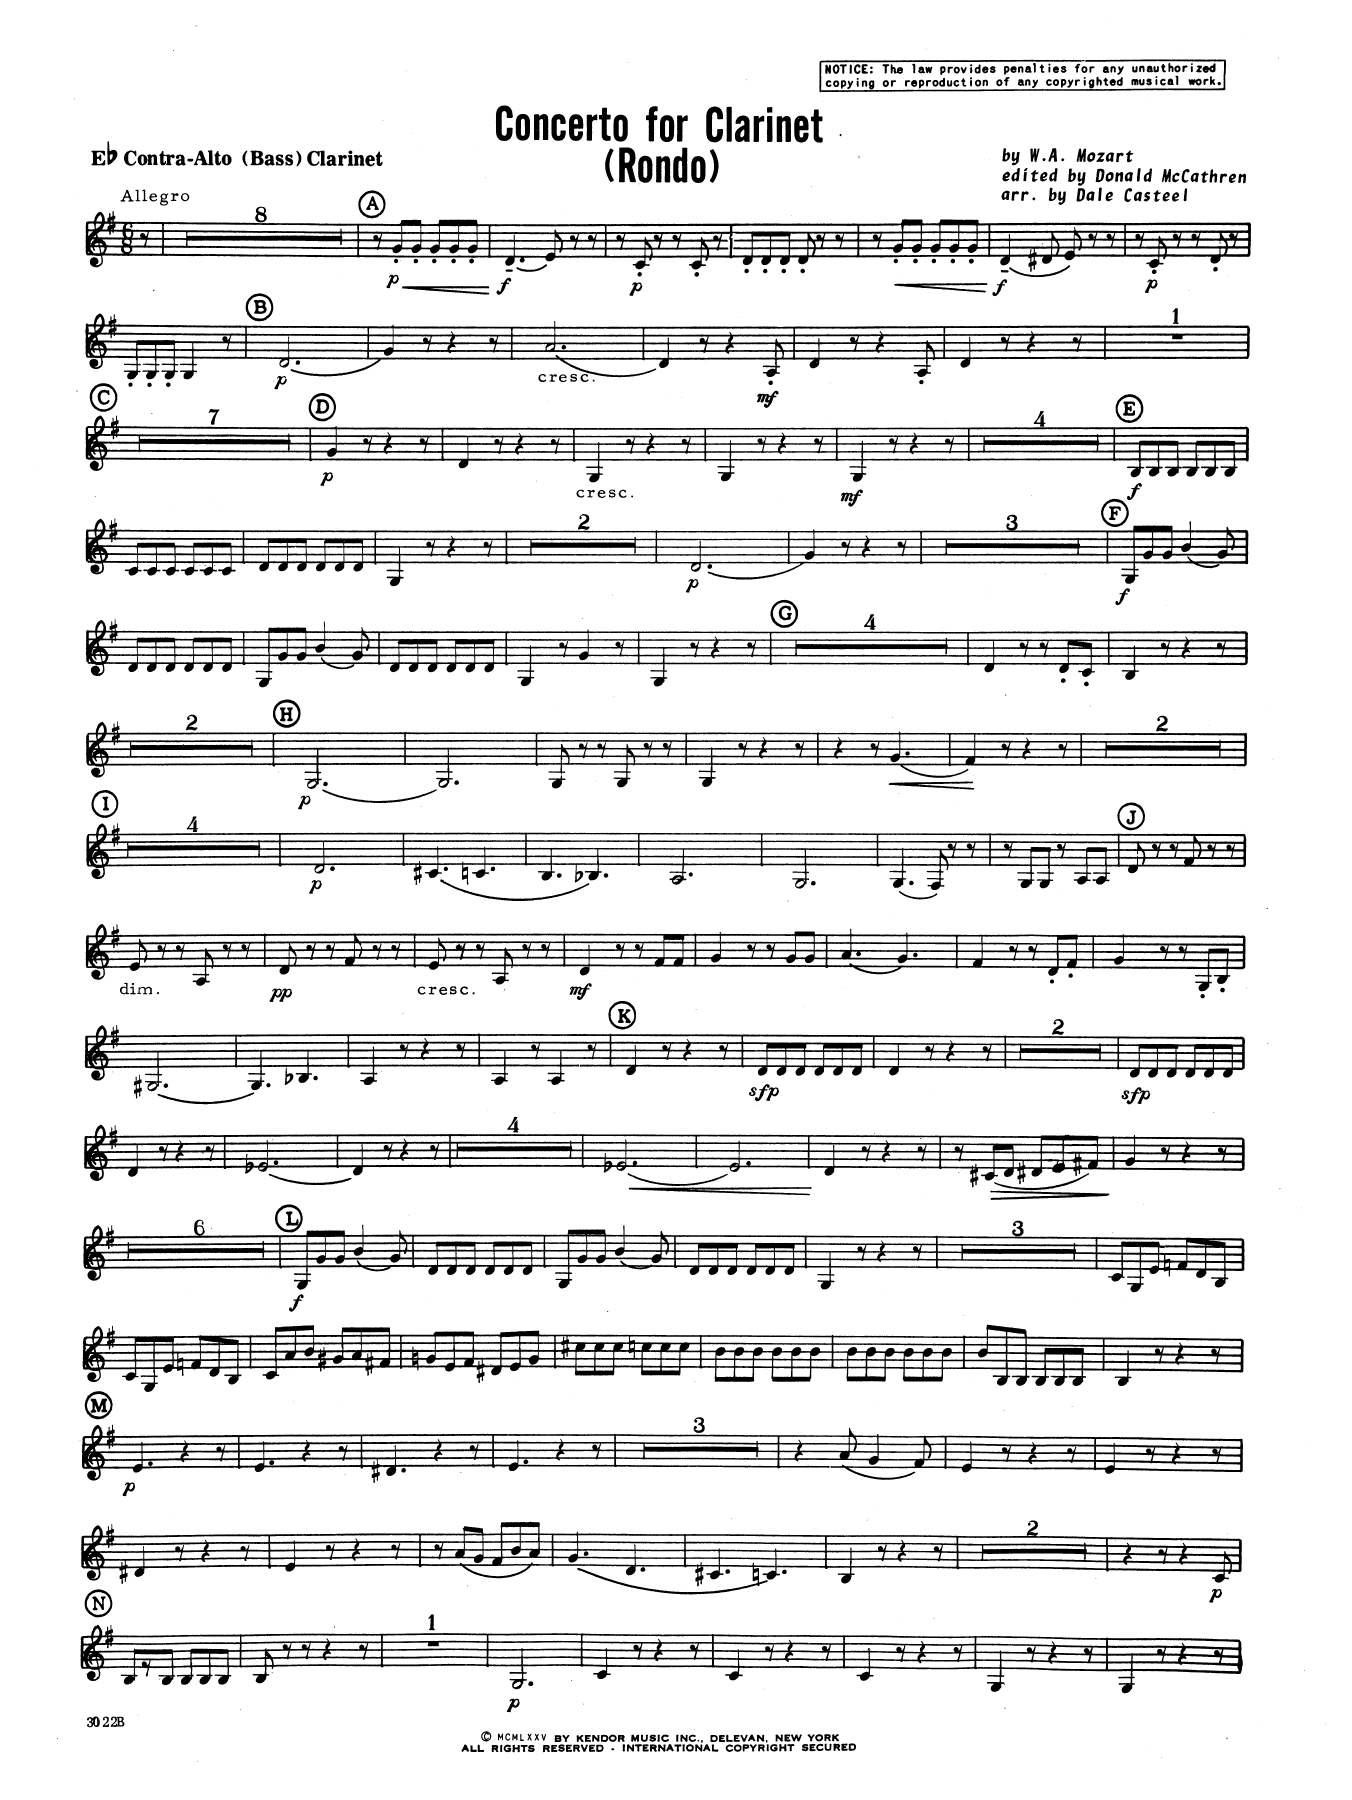 Concerto For Clarinet - Rondo (3rd Movement) - K.622 - Eb Contra Alto Clarinet (Concert Band) von Donald McCathren and Dale Casteel